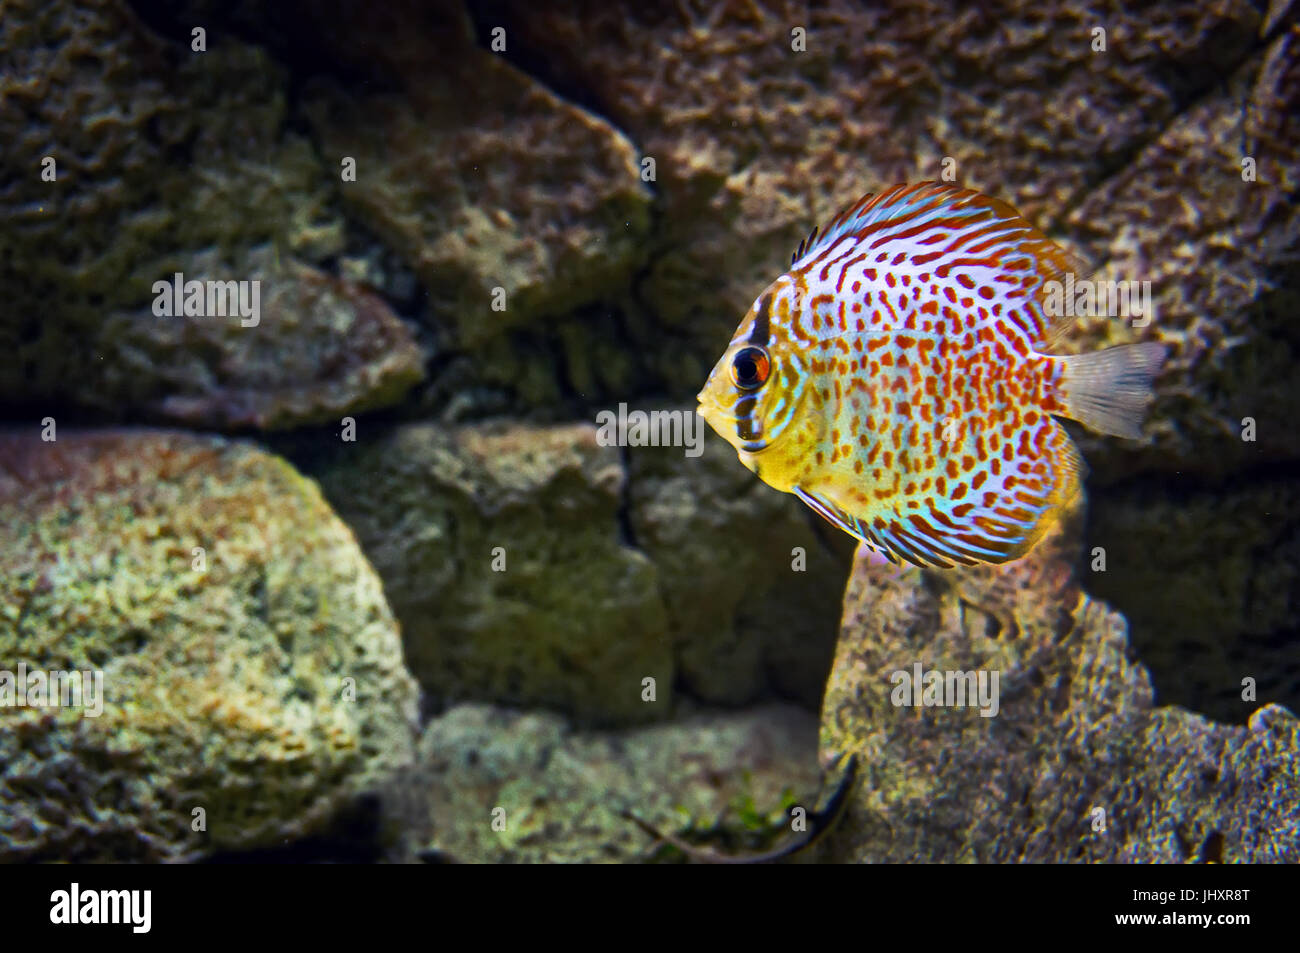 Beautiful fish in the aquarium, Goldfish, aquarium, a fish on the background of aquatic plants. Stock Photo